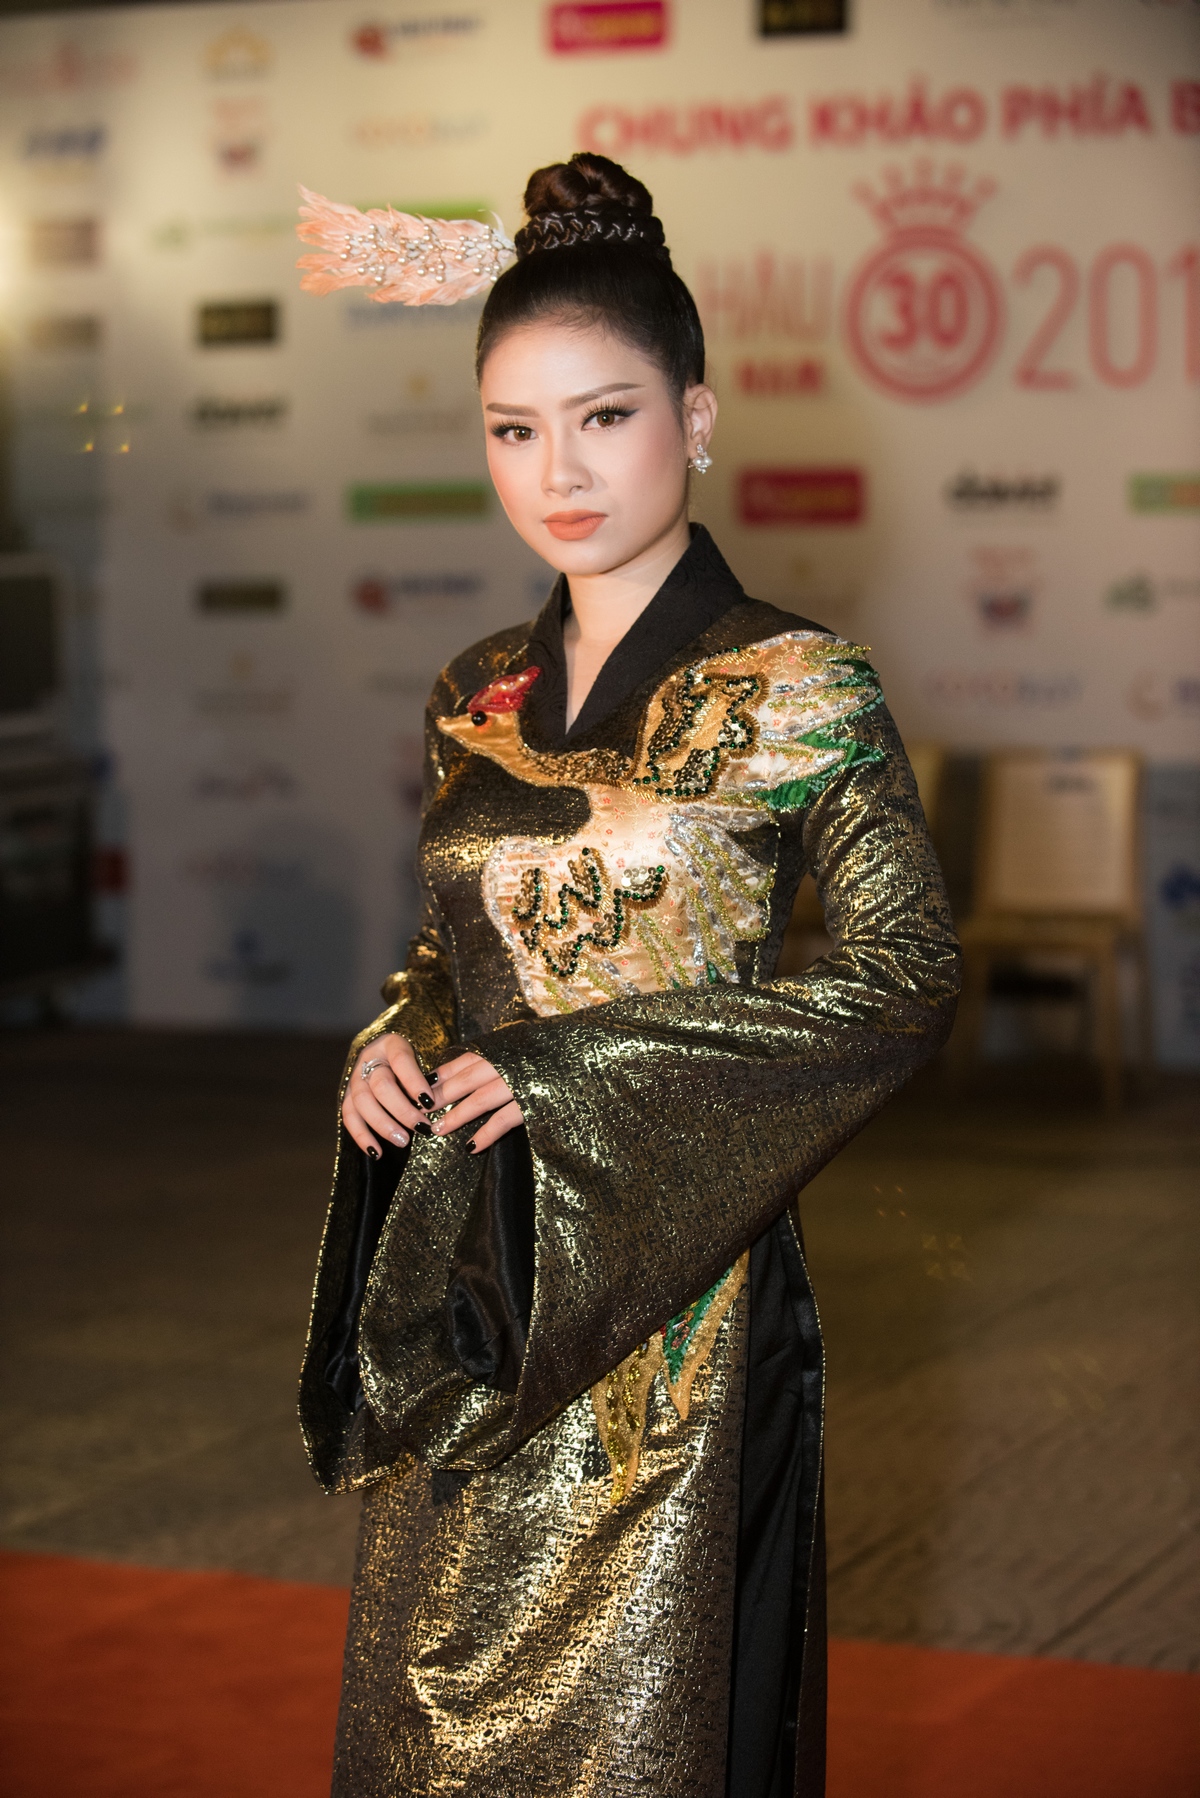 Dương Hoàng Yến gây choáng với màn lột xác ở đêm thi Hoa hậu - 1